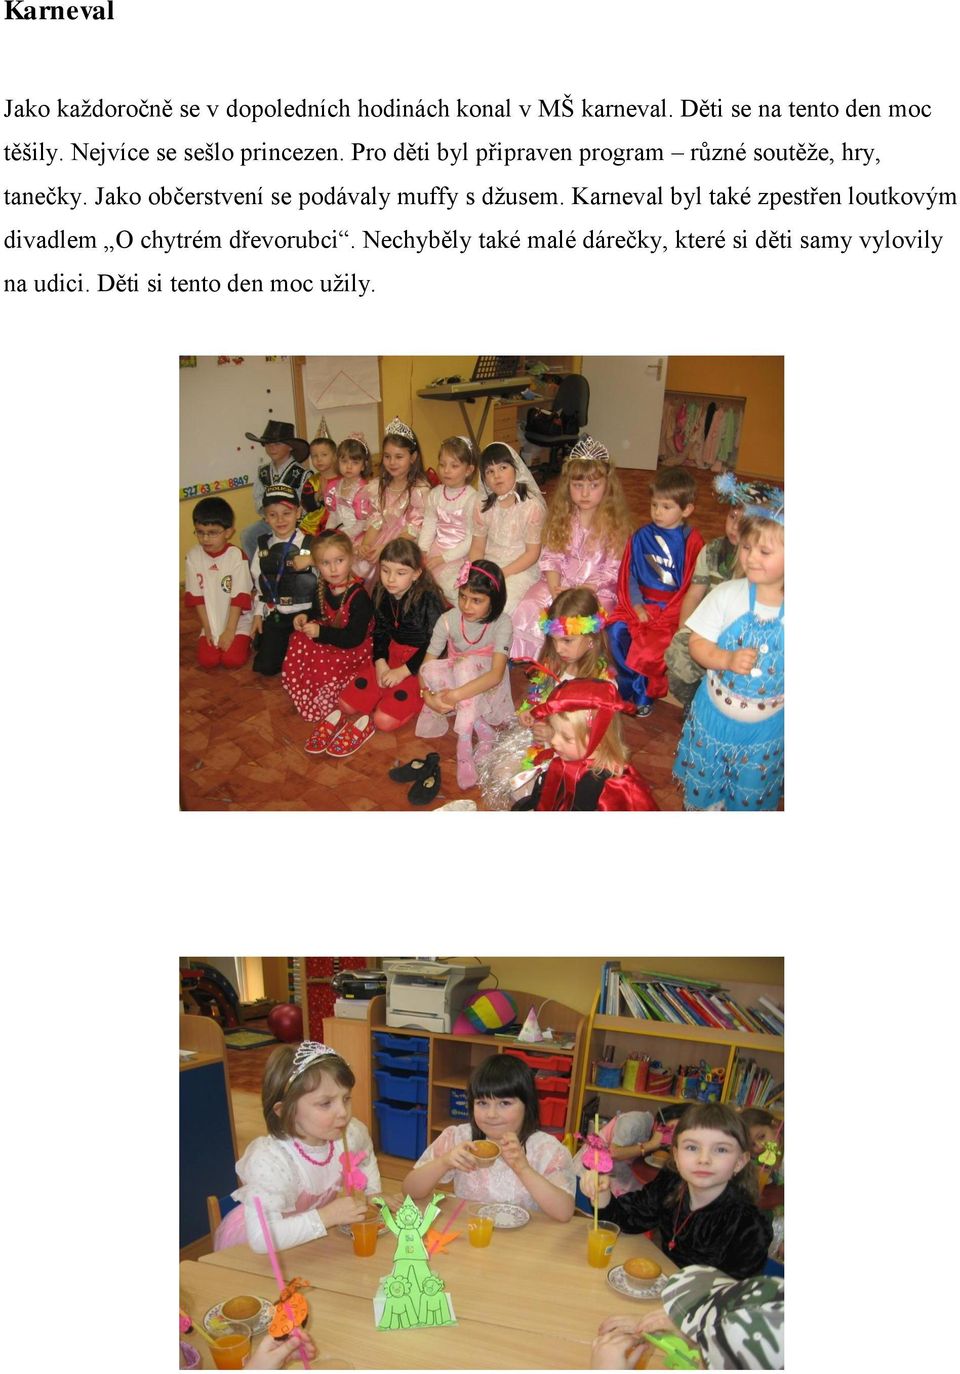 Pro děti byl připraven program různé soutěže, hry, tanečky.